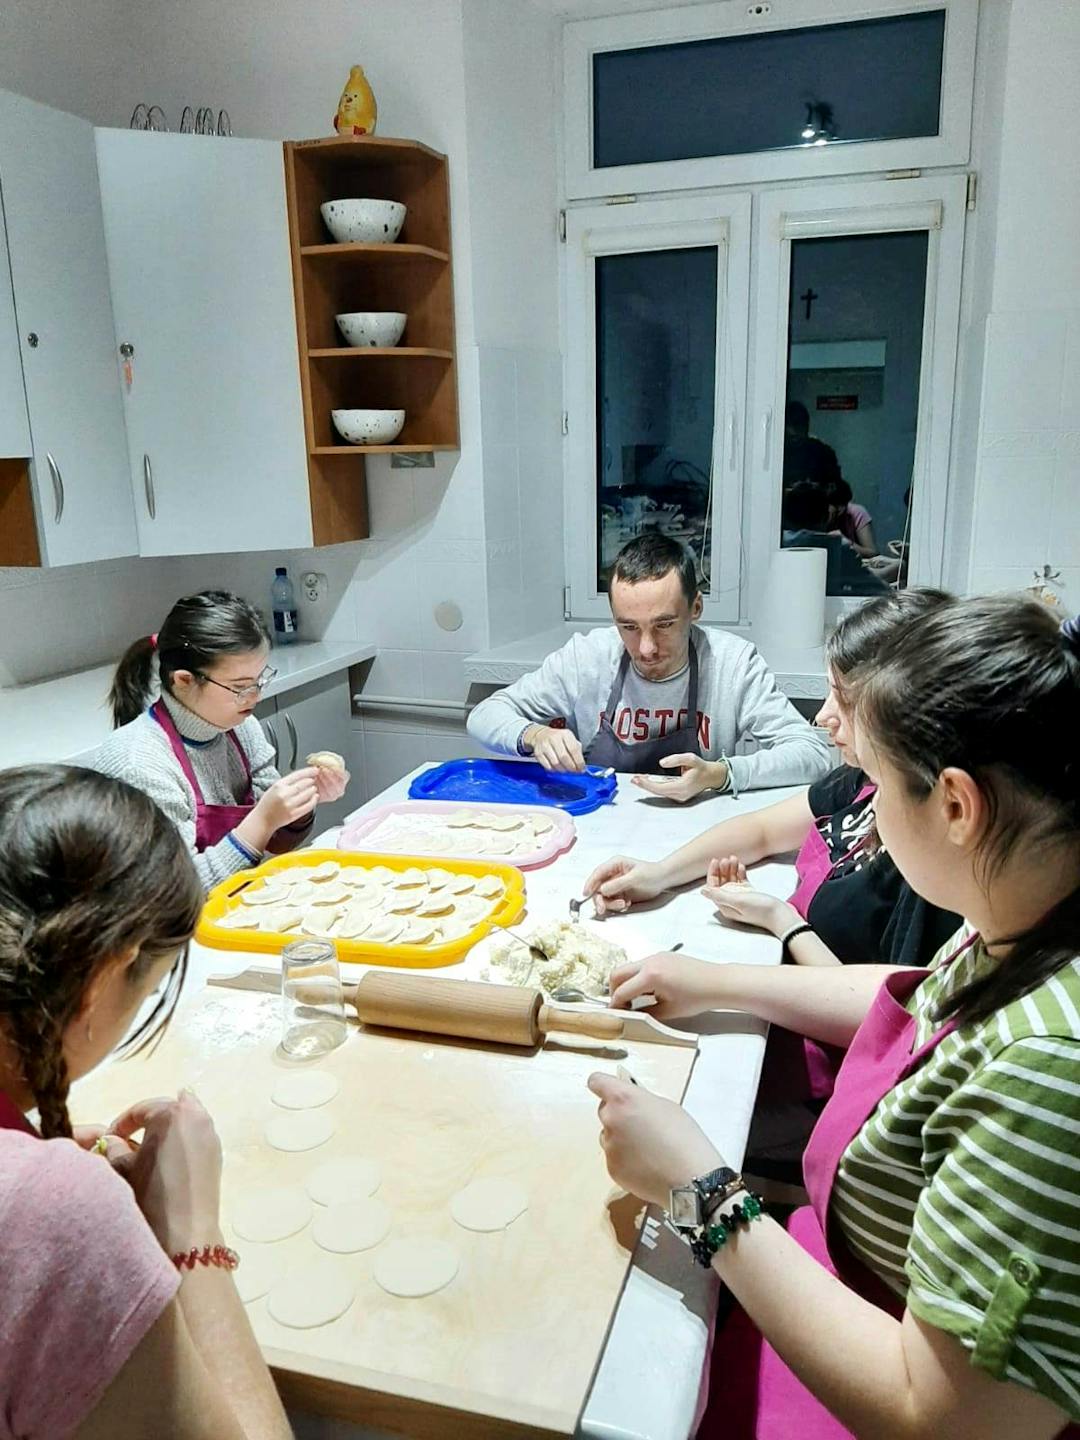 Kulinarne eksperymenty | Grupa uczniów lepi pierogi.jpg